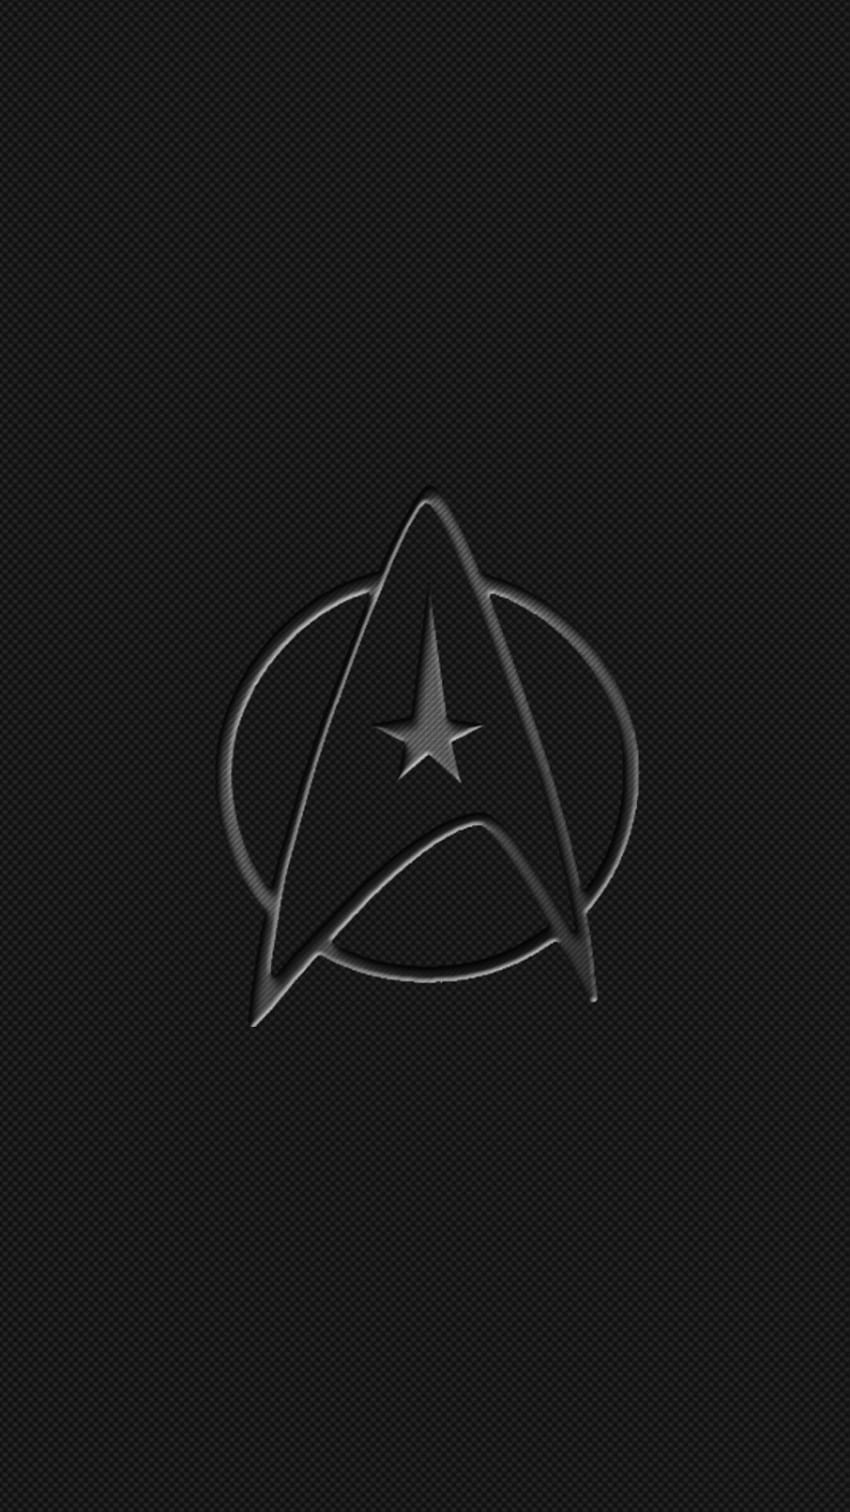 5 iPhone 7 Plus Star Trek, teléfono picard de star trek fondo de pantalla del teléfono